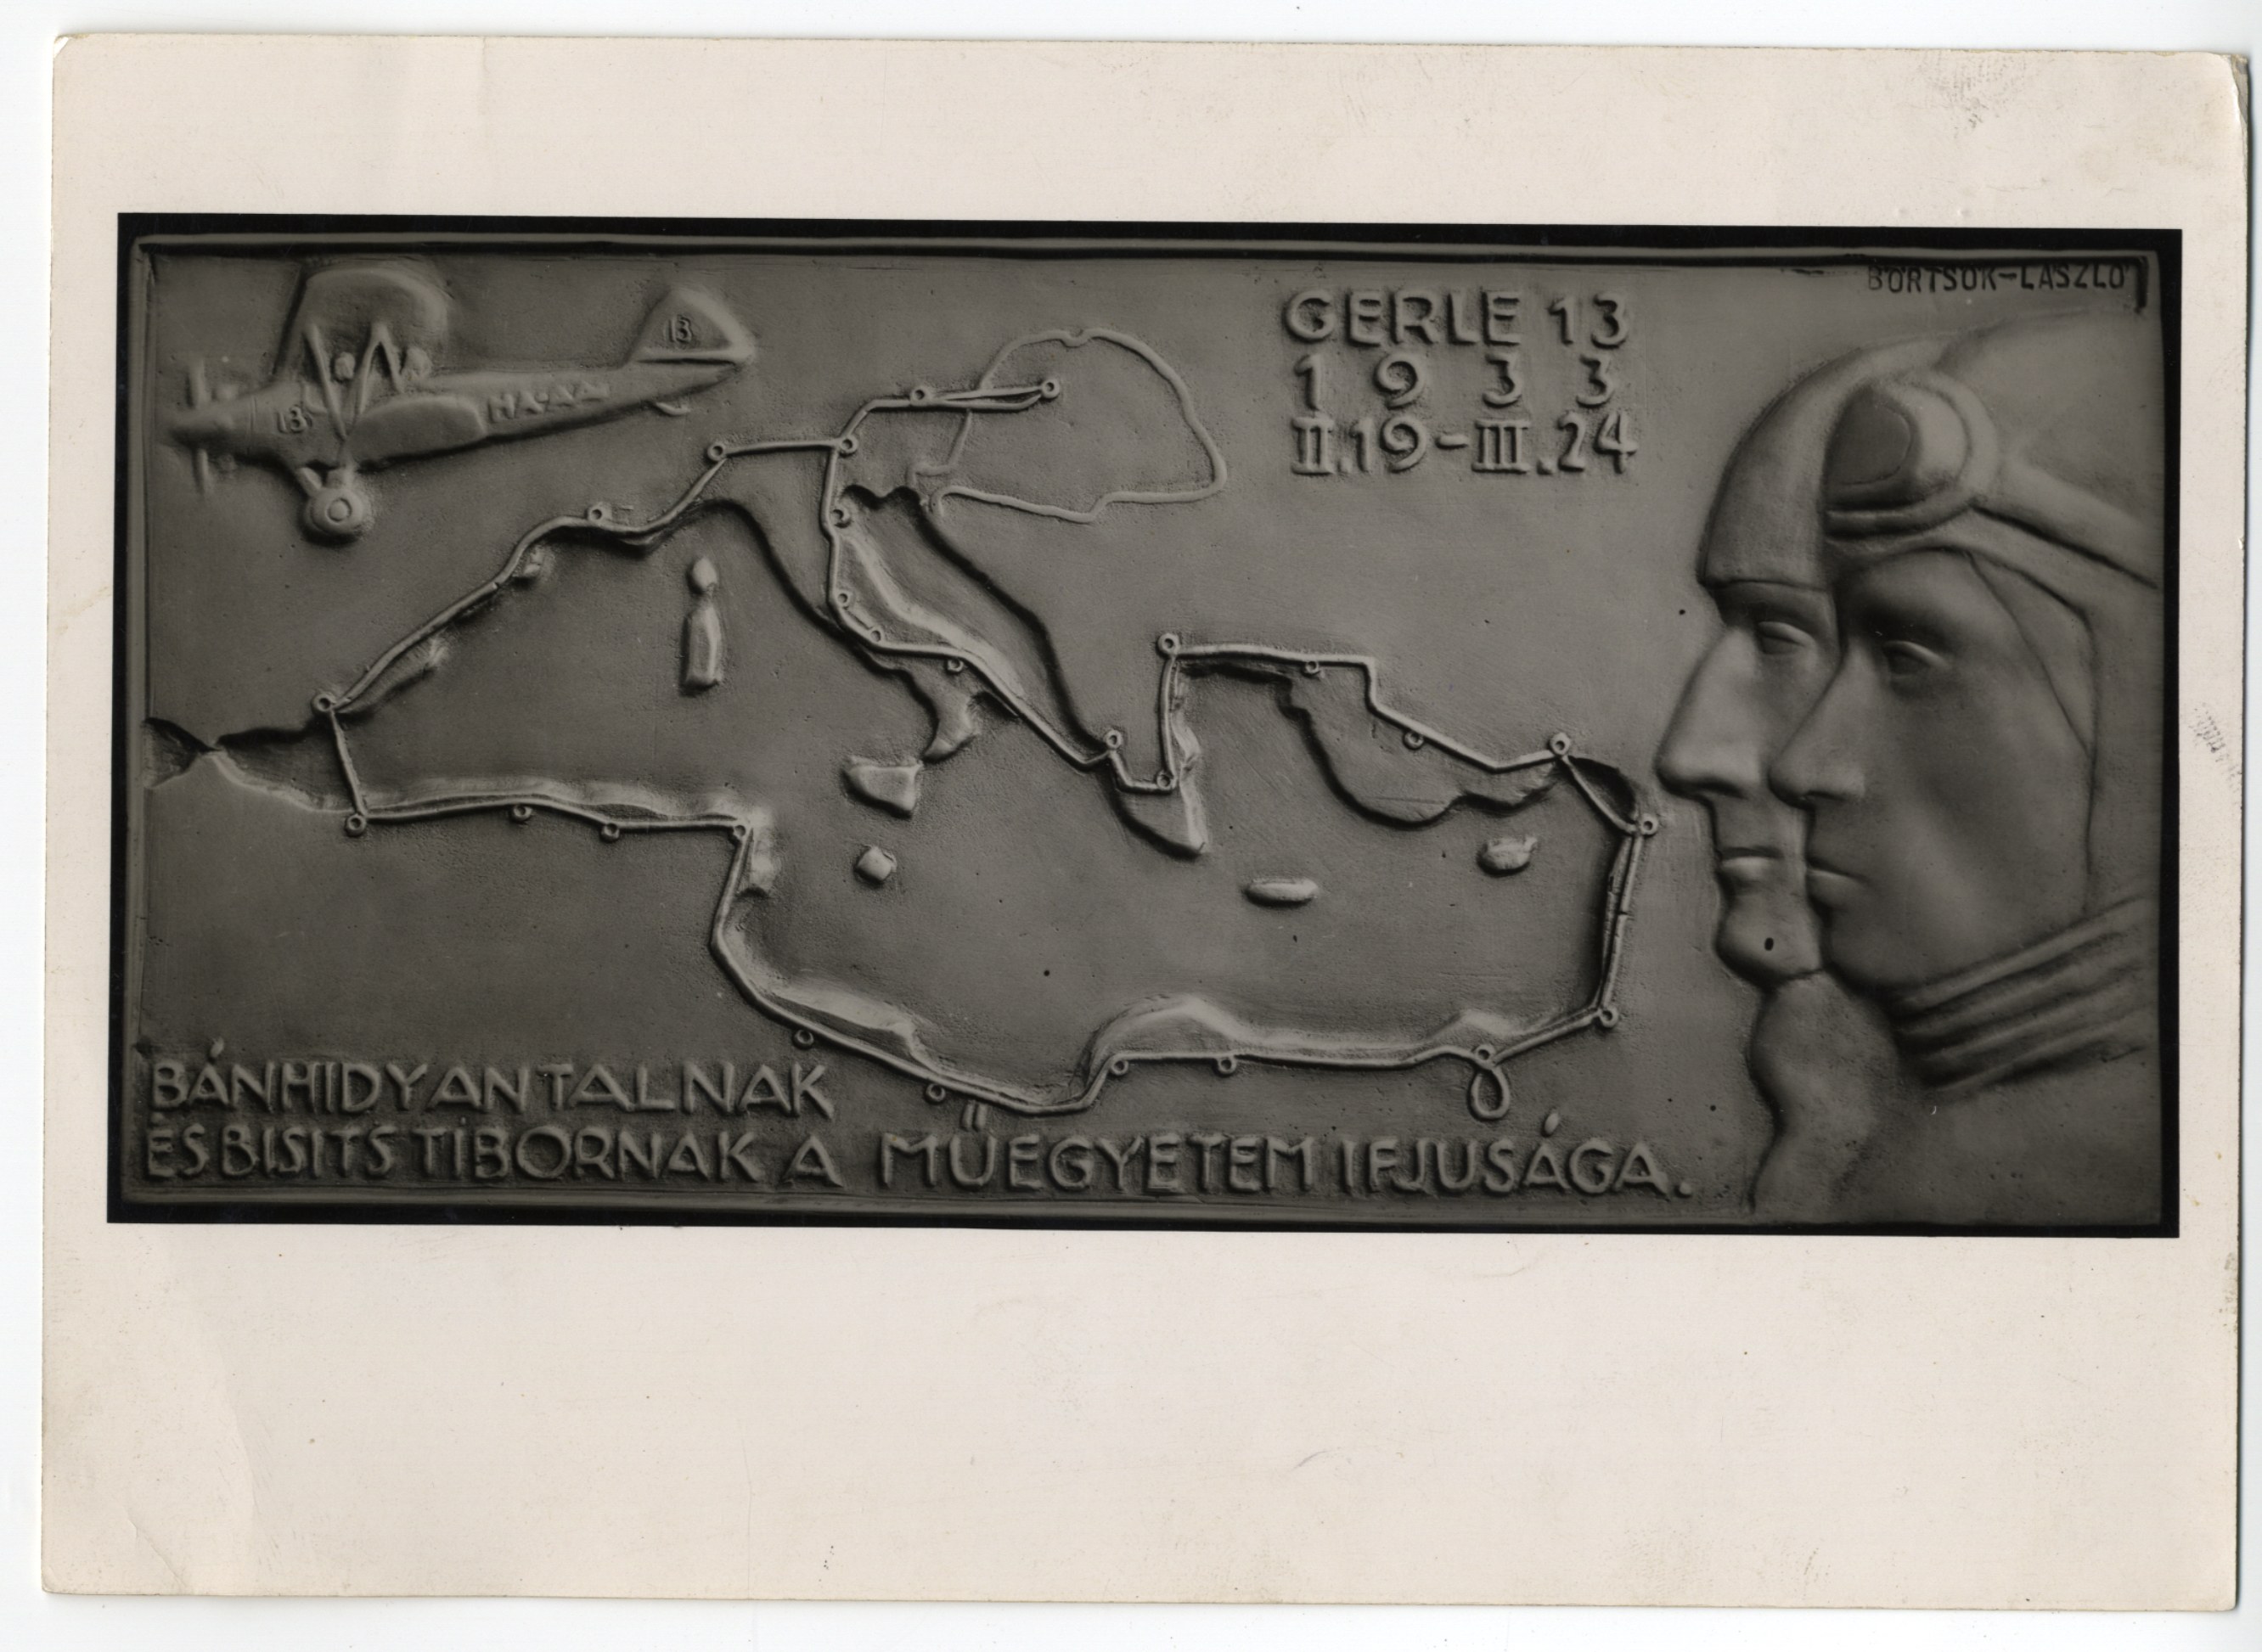 A Gerle 13 földközi-tengeri útjának emlékére készült plakett